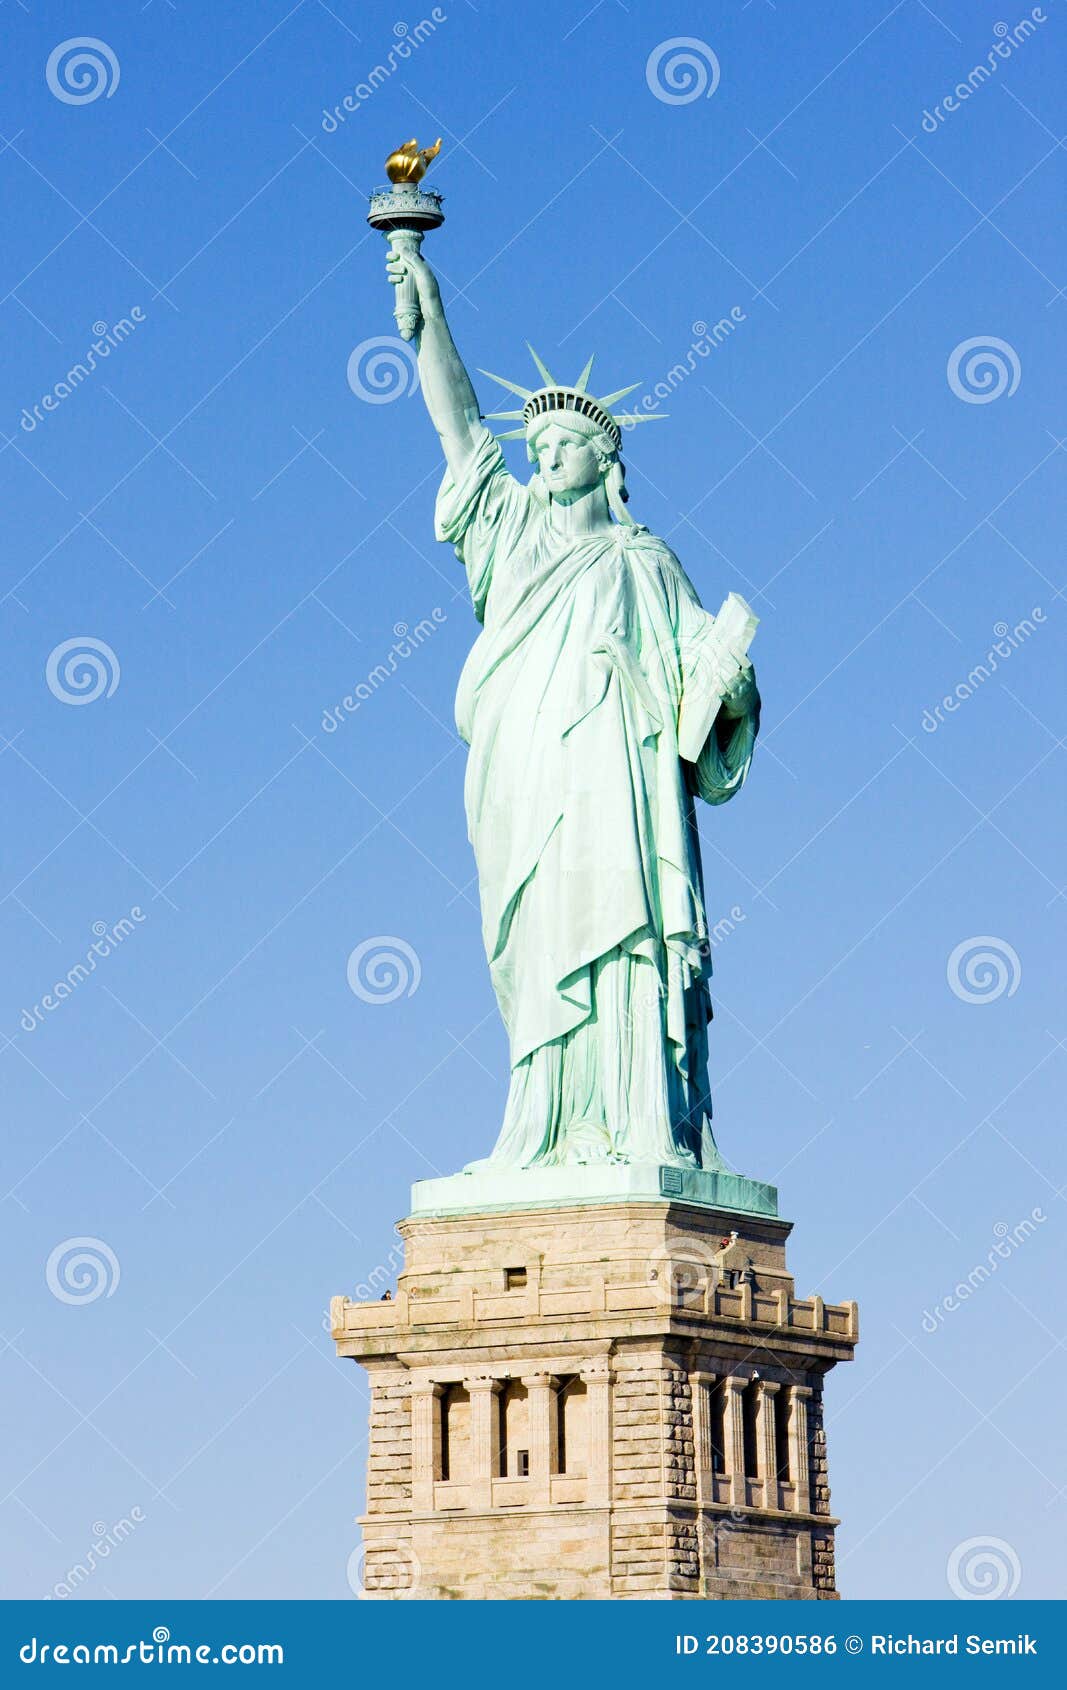 图片素材 : 纽约, 纪念碑, 雕像, 自由女神像, nyc, 美国, 地标, 雕塑, 纪念馆, 艺术 4608x3456 ...